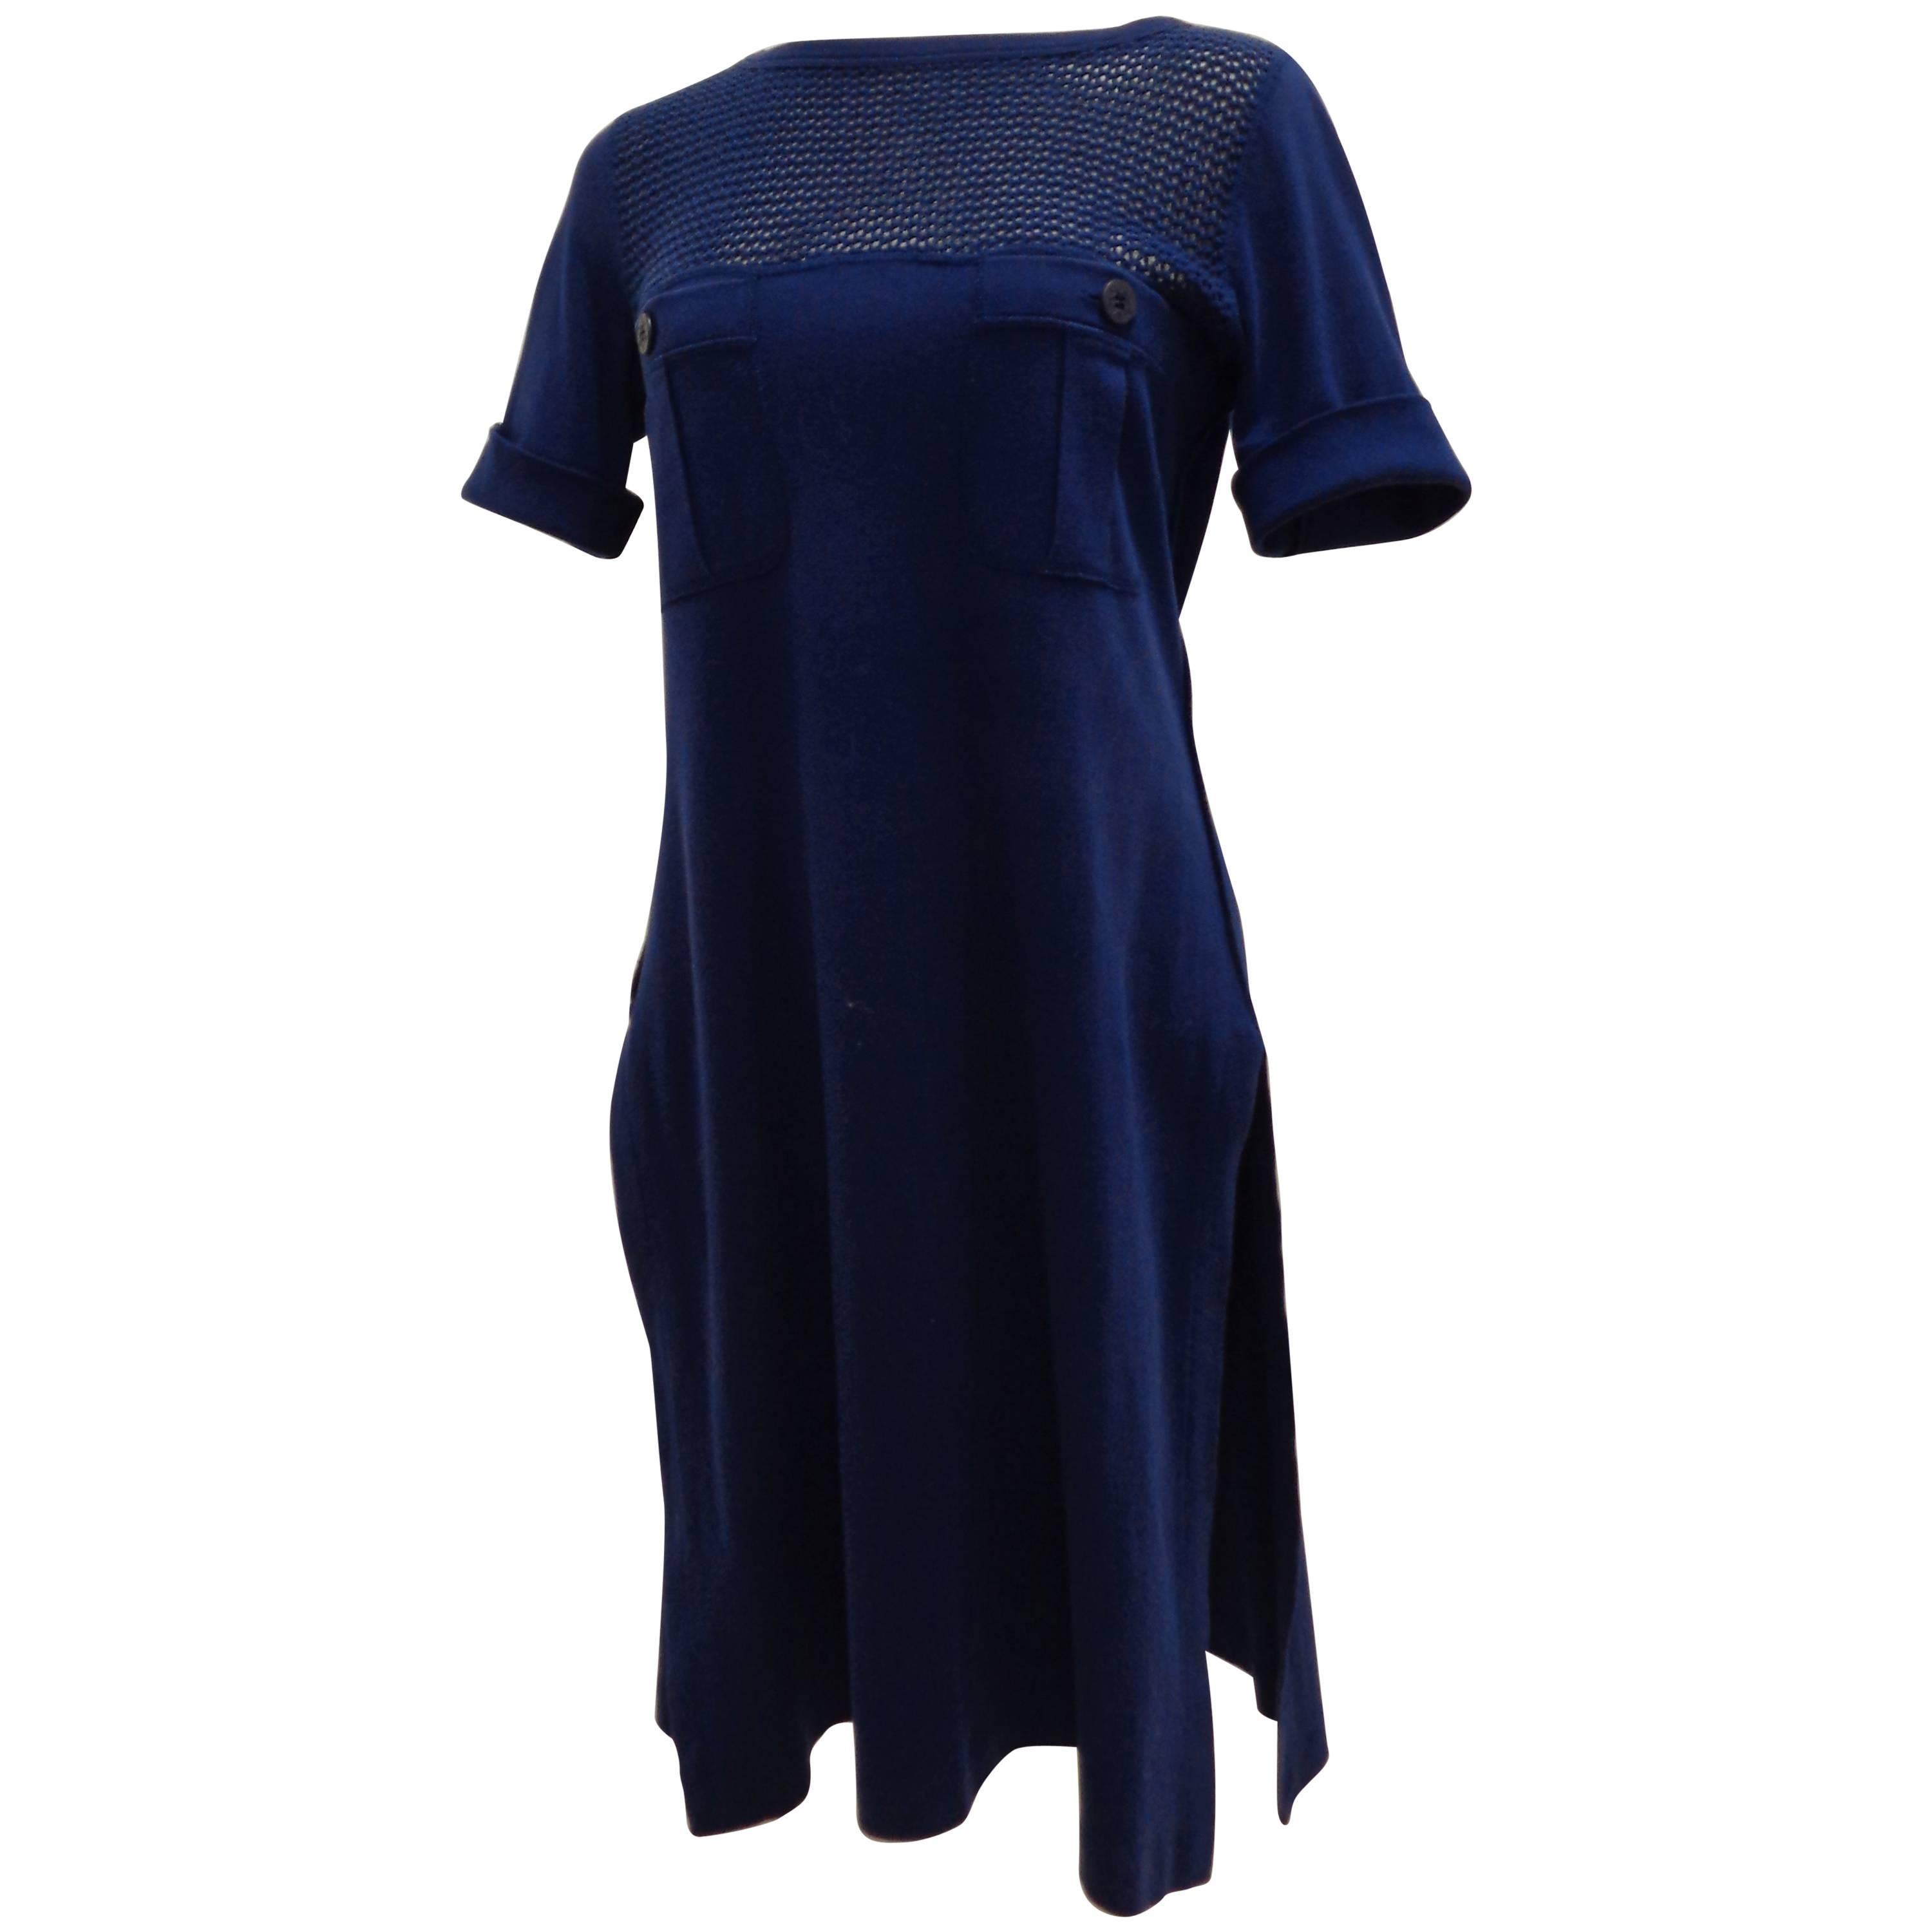 Sonia Rykiel blu dress For Sale